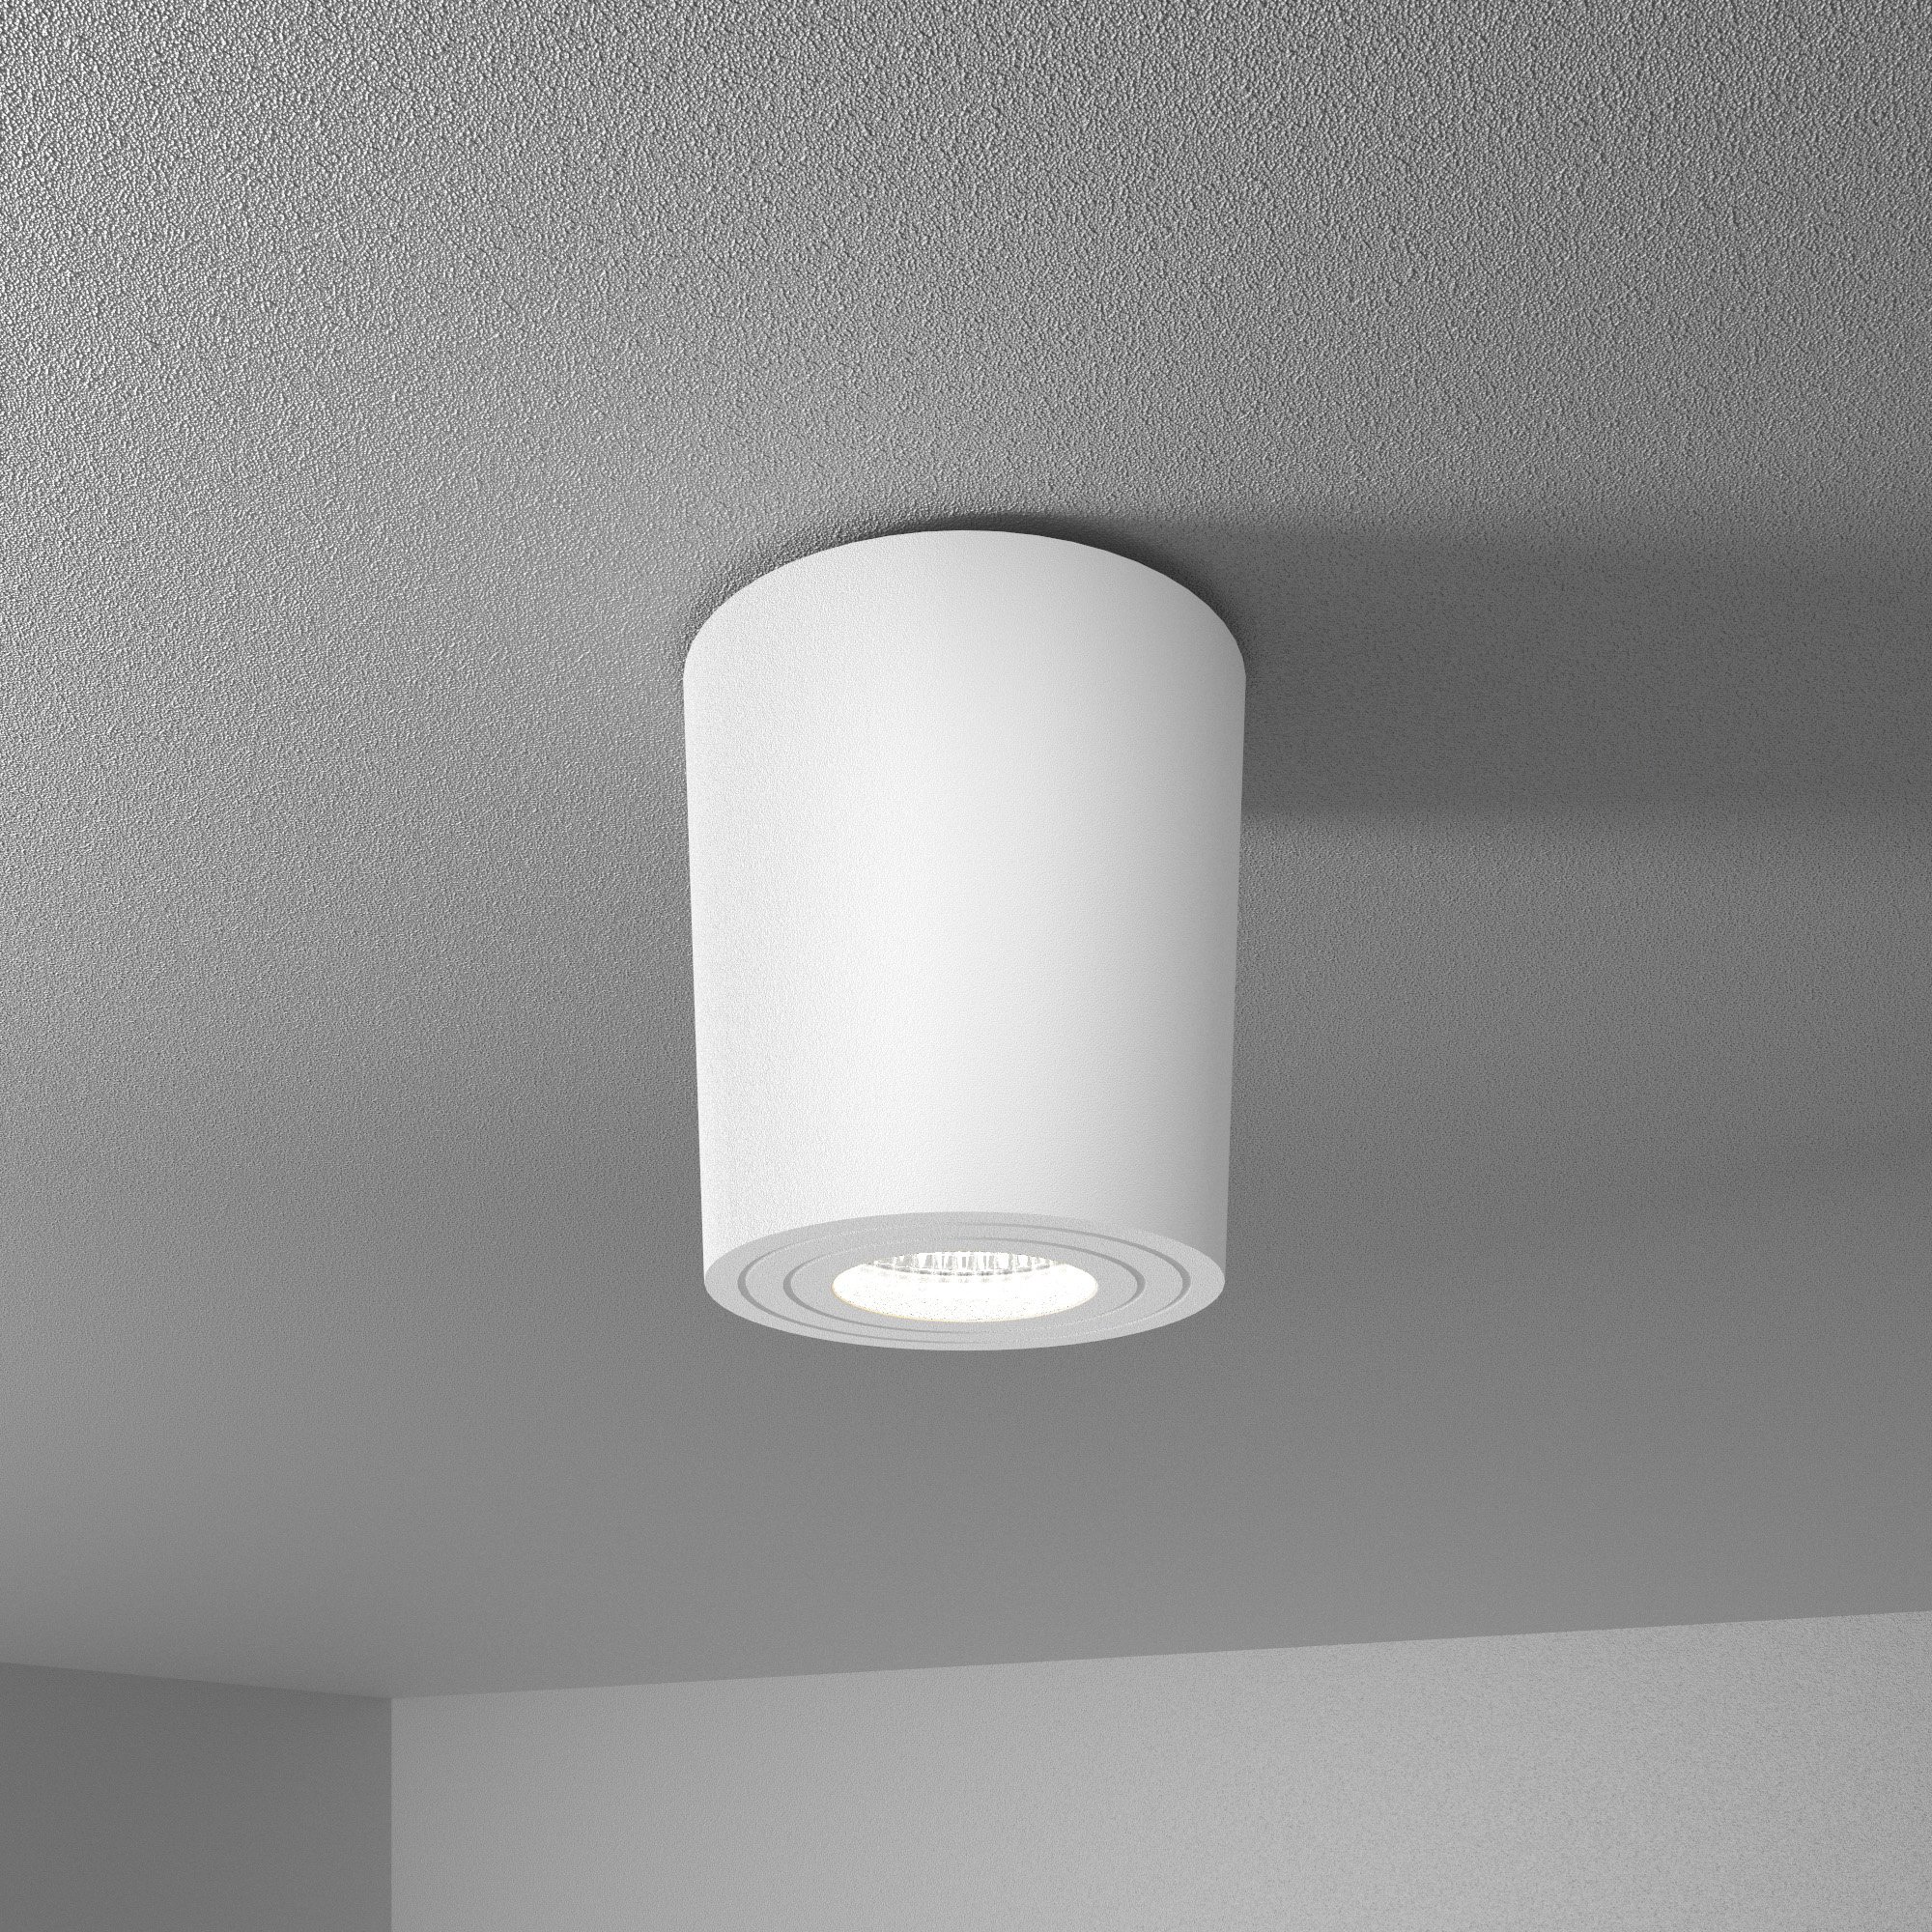 HOFTRONIC™ Paxton LED Opbouwspot plafond - Rond - Wit - Aluminium met poedercoating - IP65 waterdicht voor binnen en buiten - incl. GU10 spot Daglicht wit 6000K - 3 jaar garantie